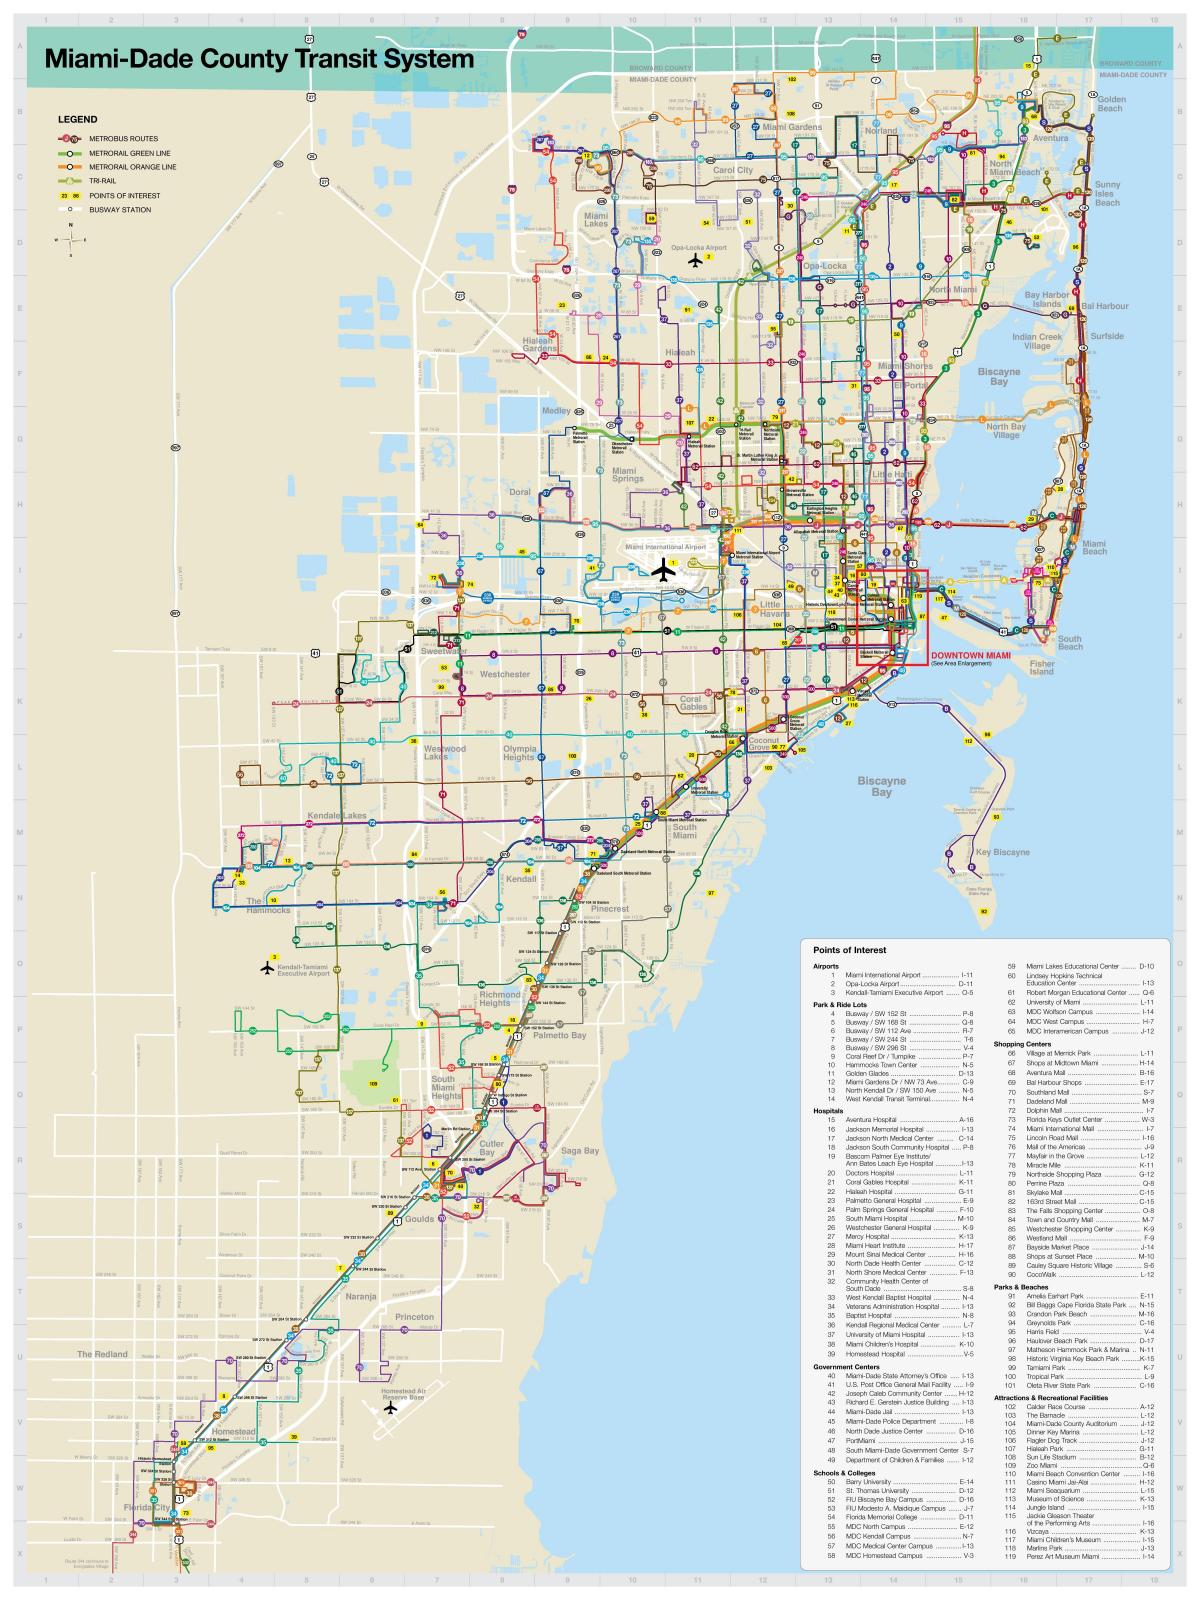 迈阿密的公共交通运输地图